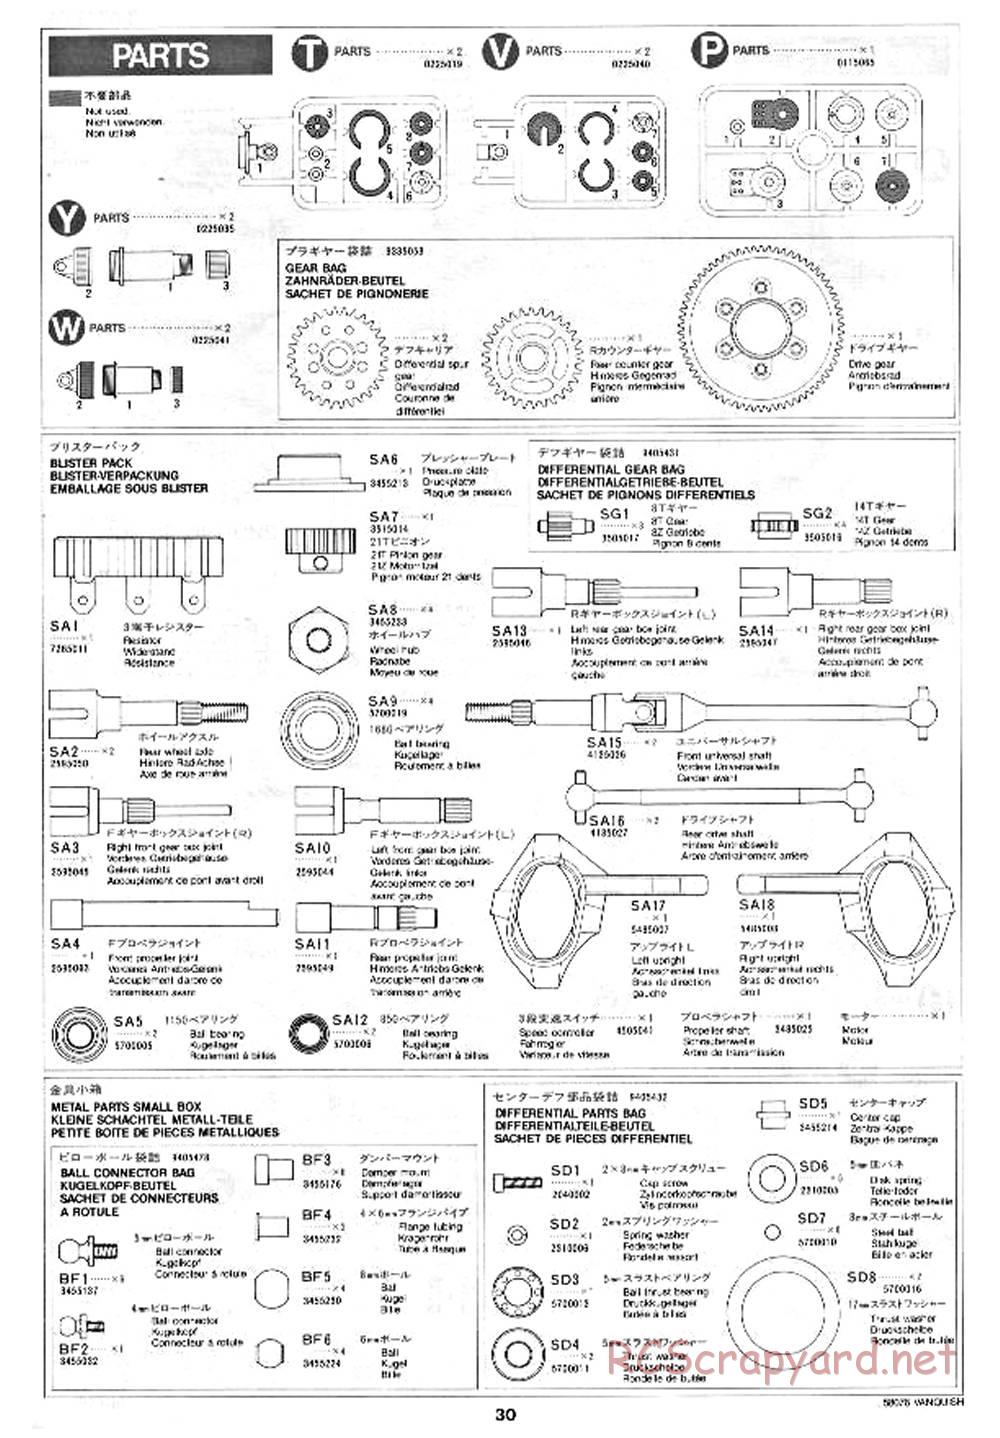 Tamiya - Vanquish - 58076 - Manual - Page 30